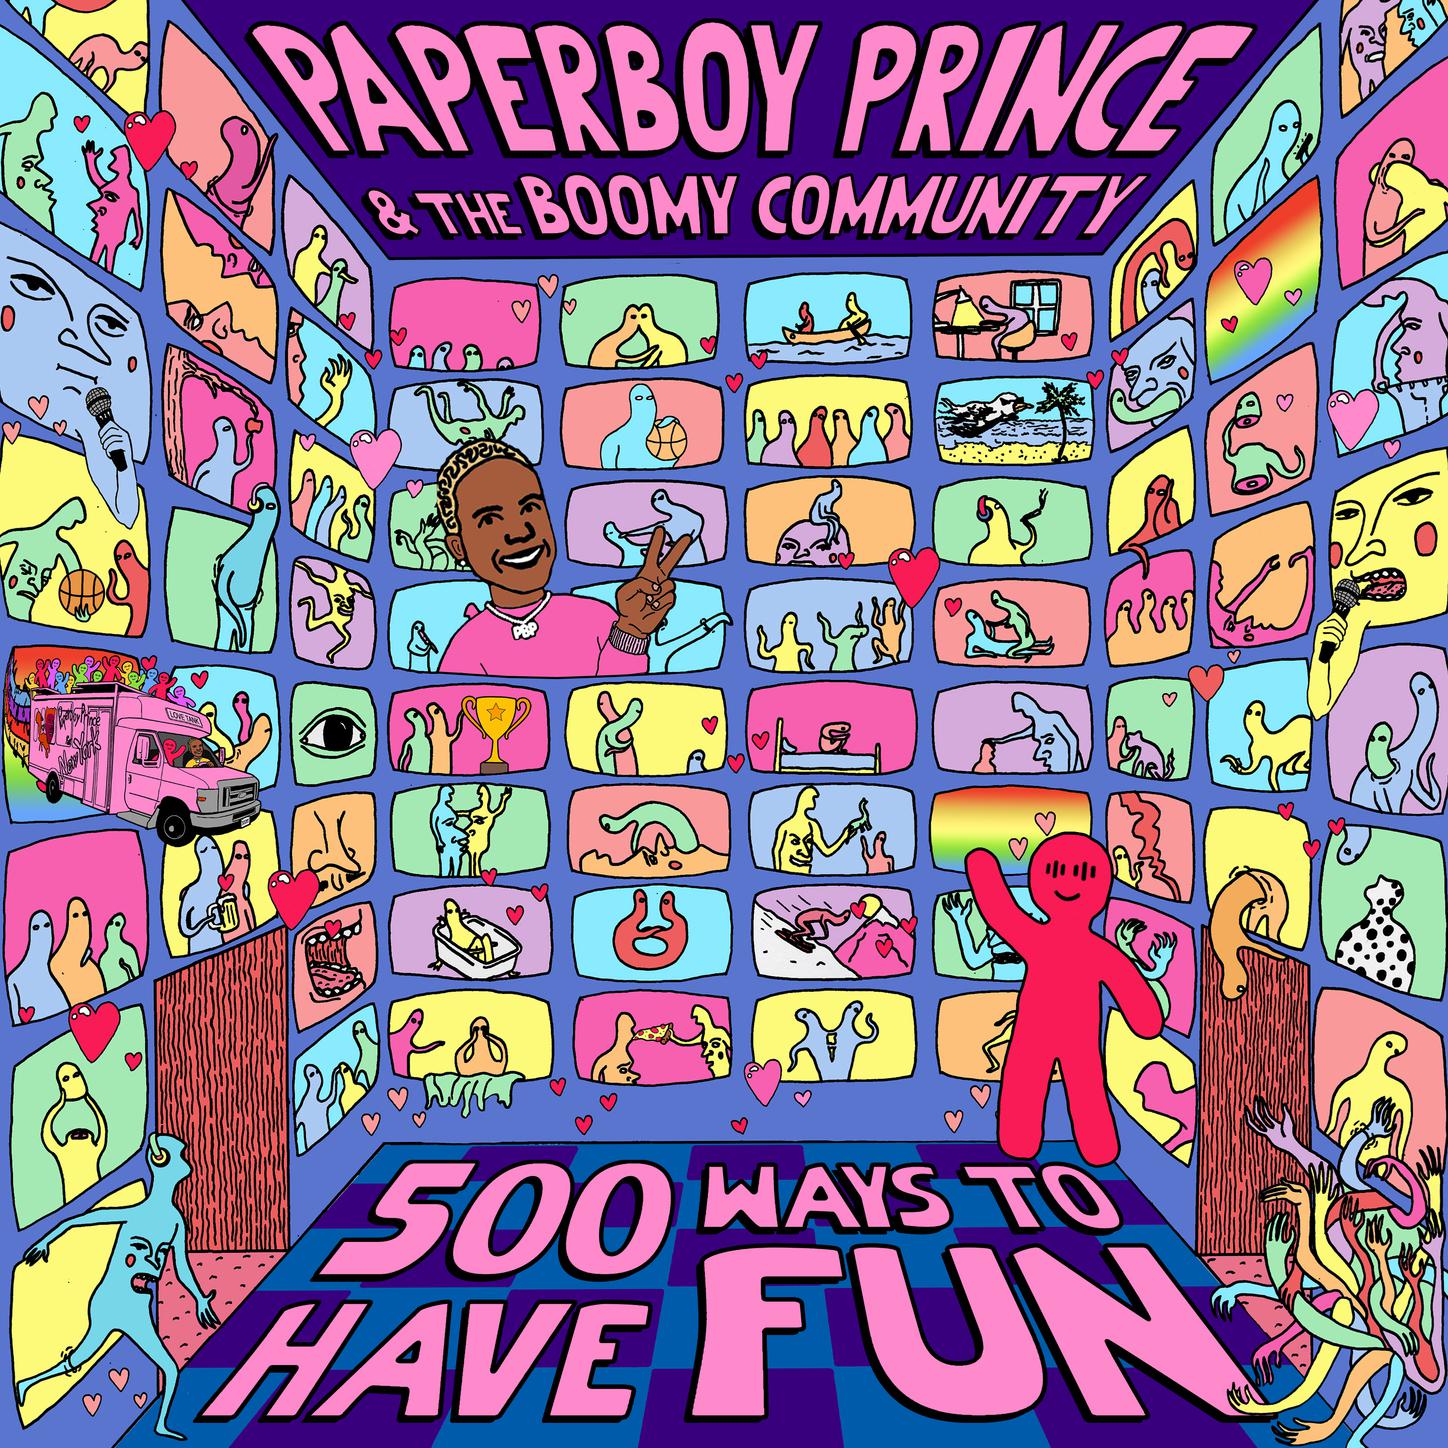 Paperboy Prince - Yuge